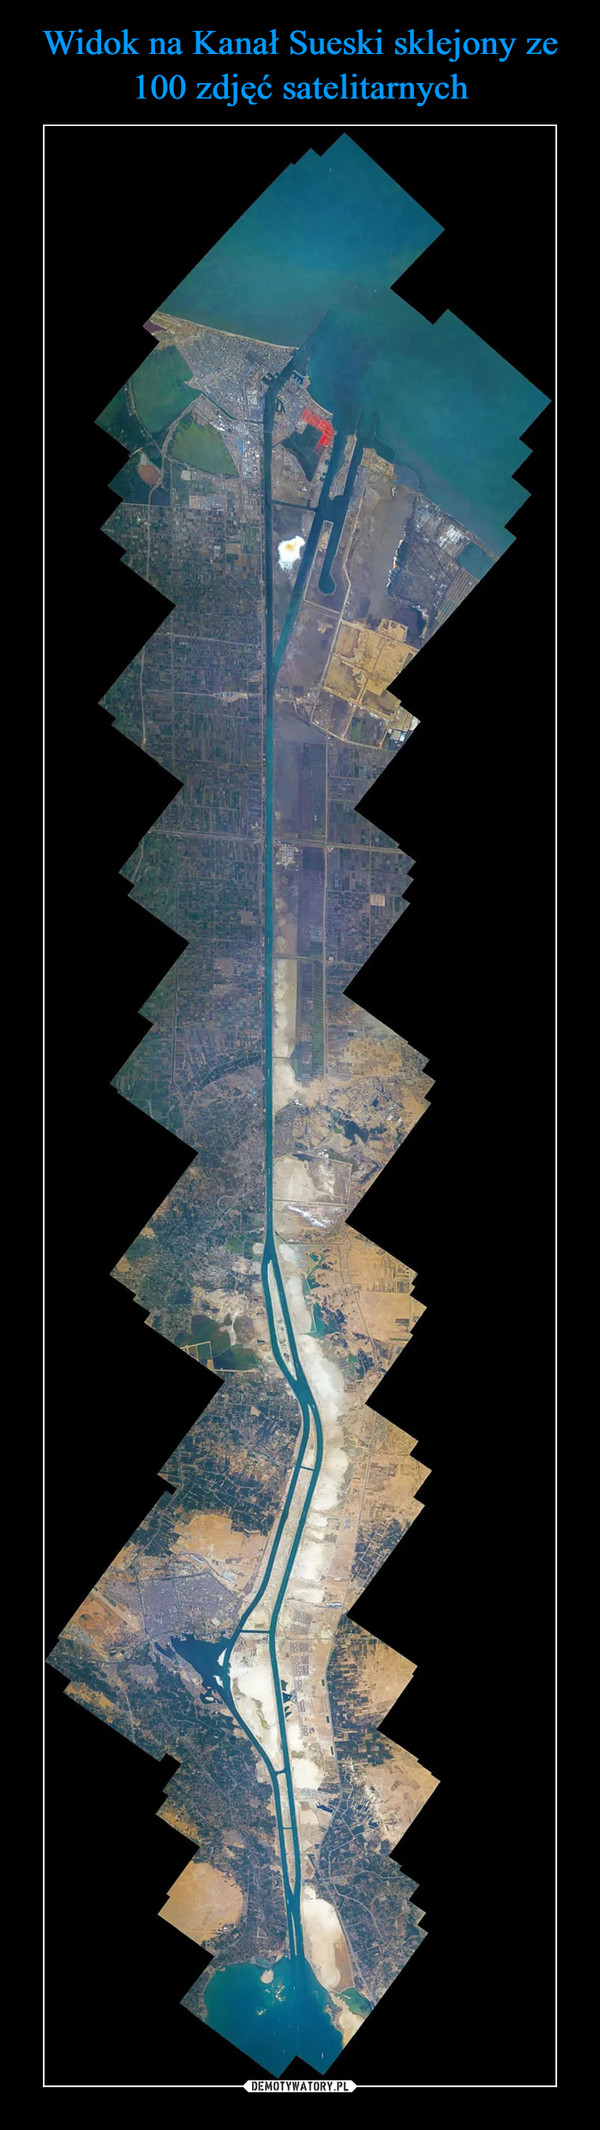 Widok na Kanał Sueski sklejony ze 100 zdjęć satelitarnych